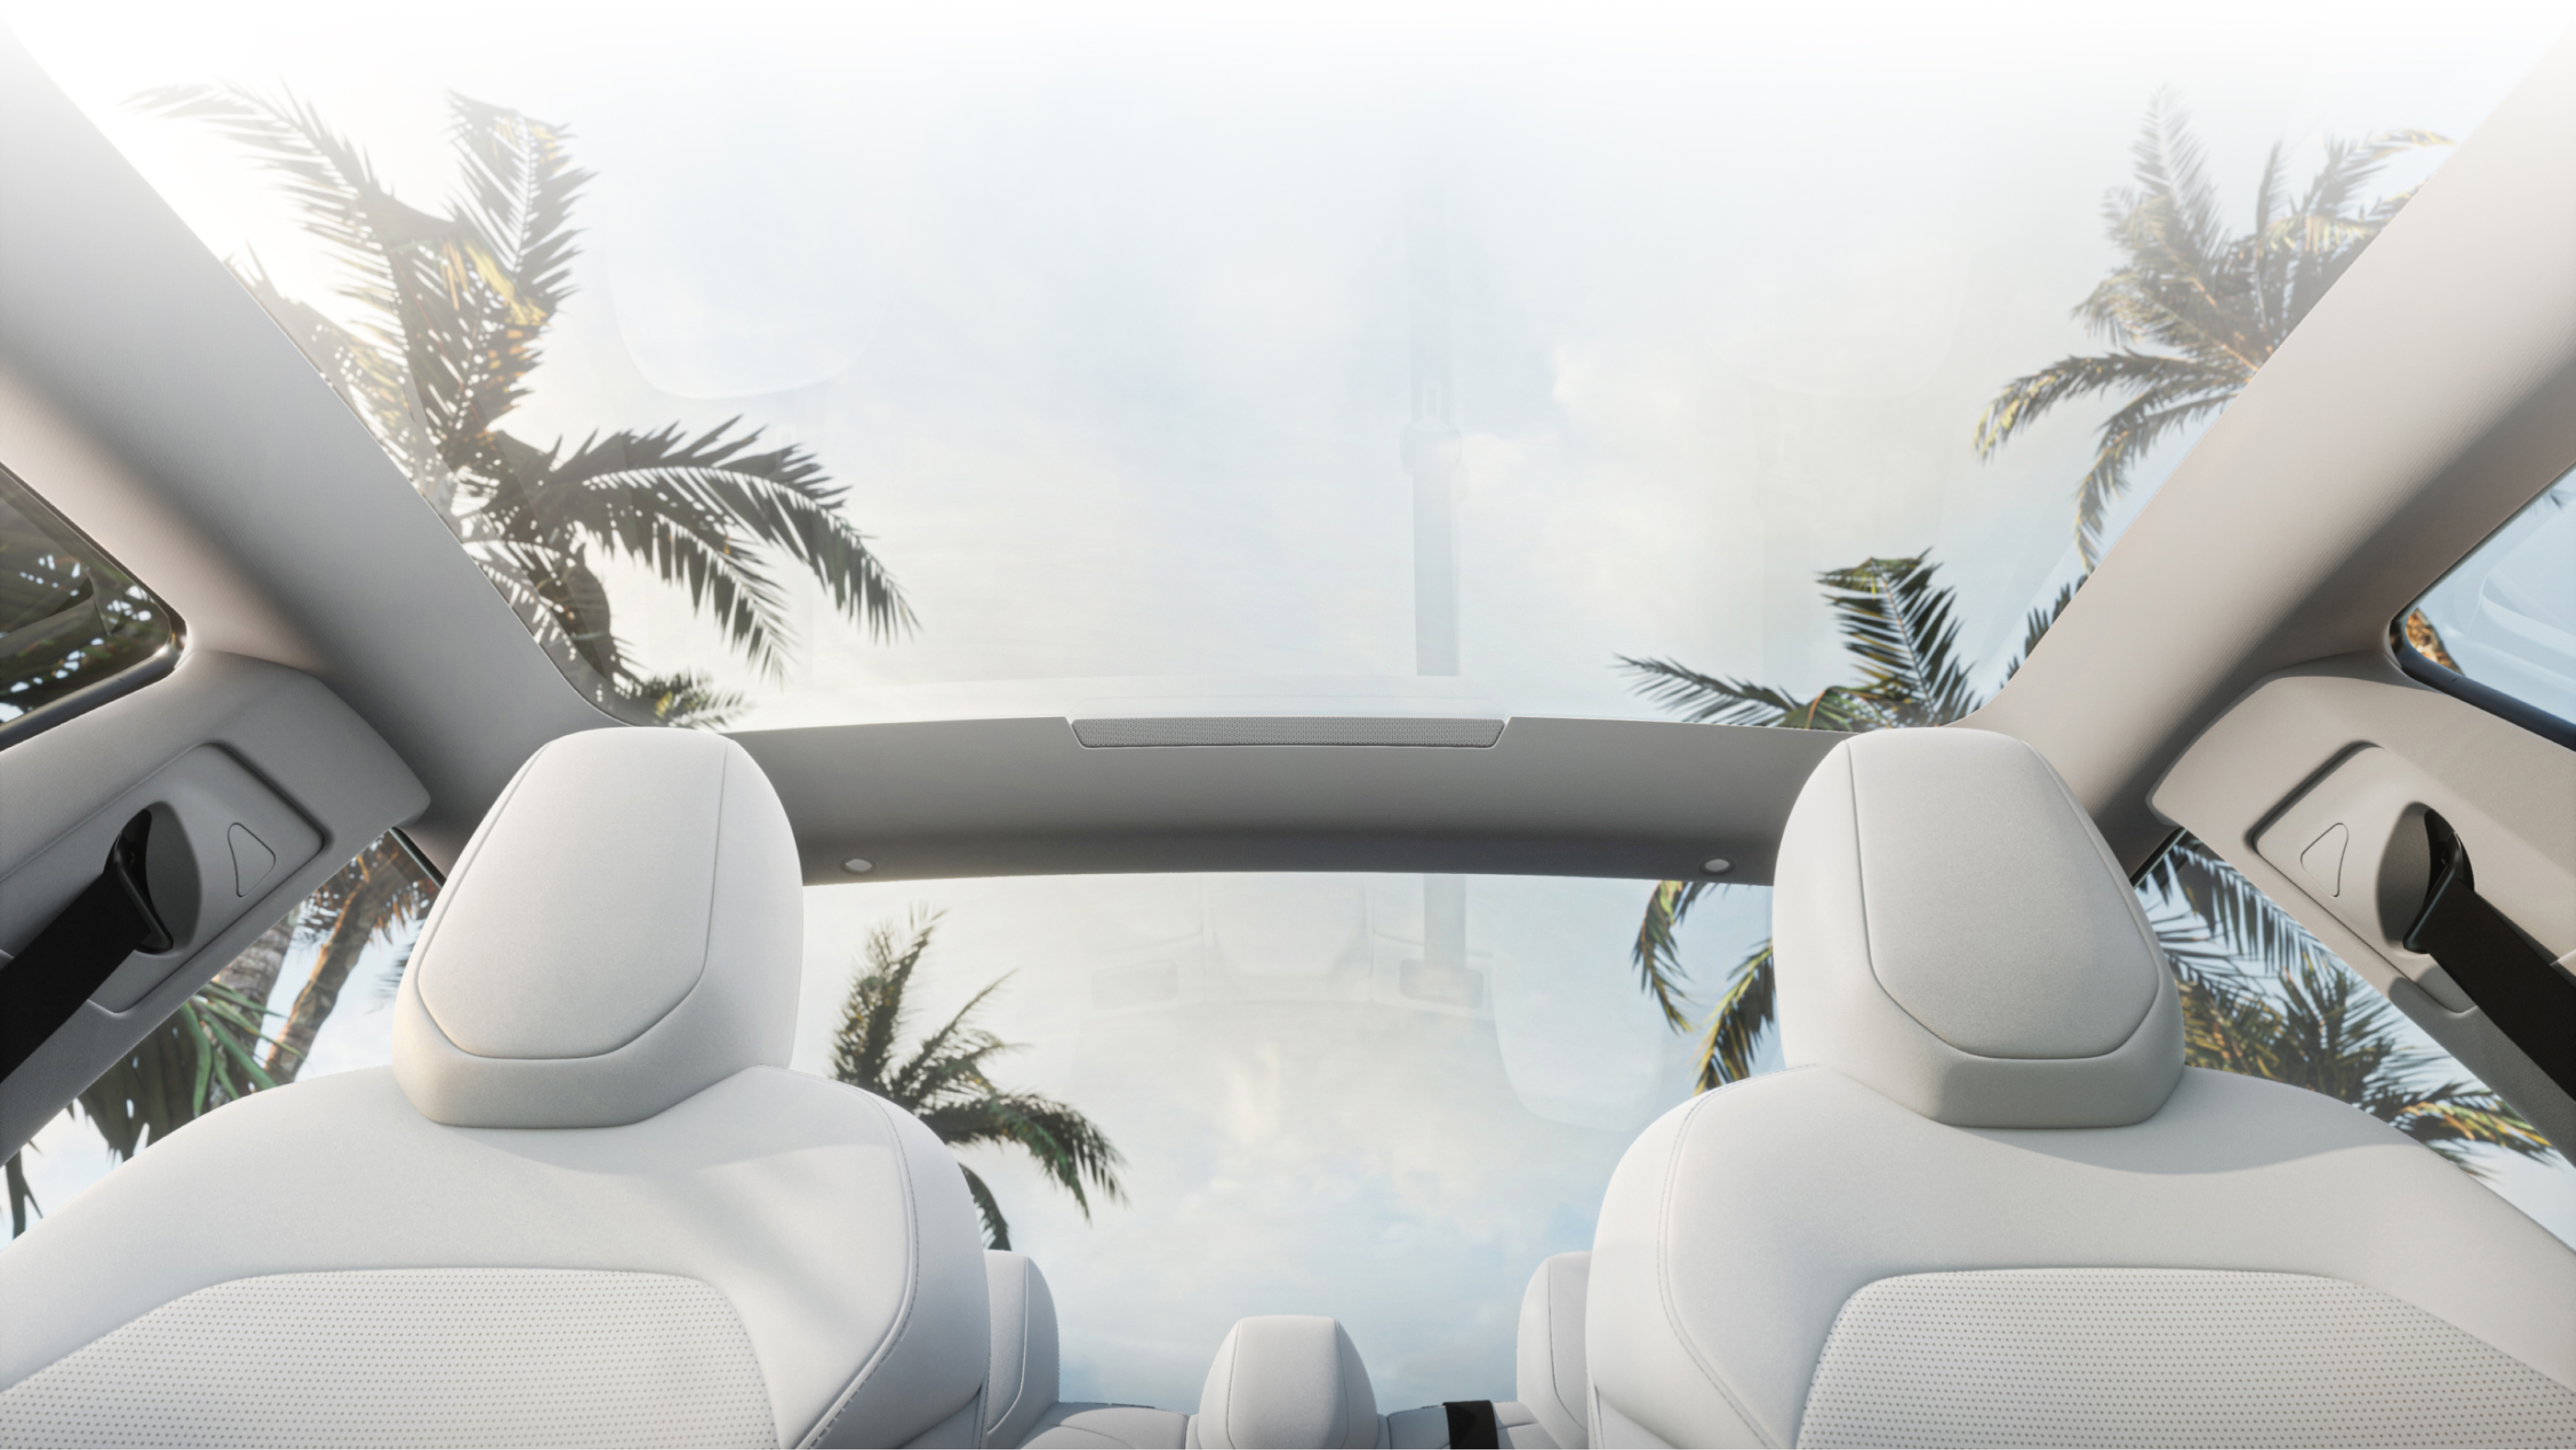 從下方的白色前排座椅目視，眺望玻璃車頂外棕櫚樹和蔚藍的天空。